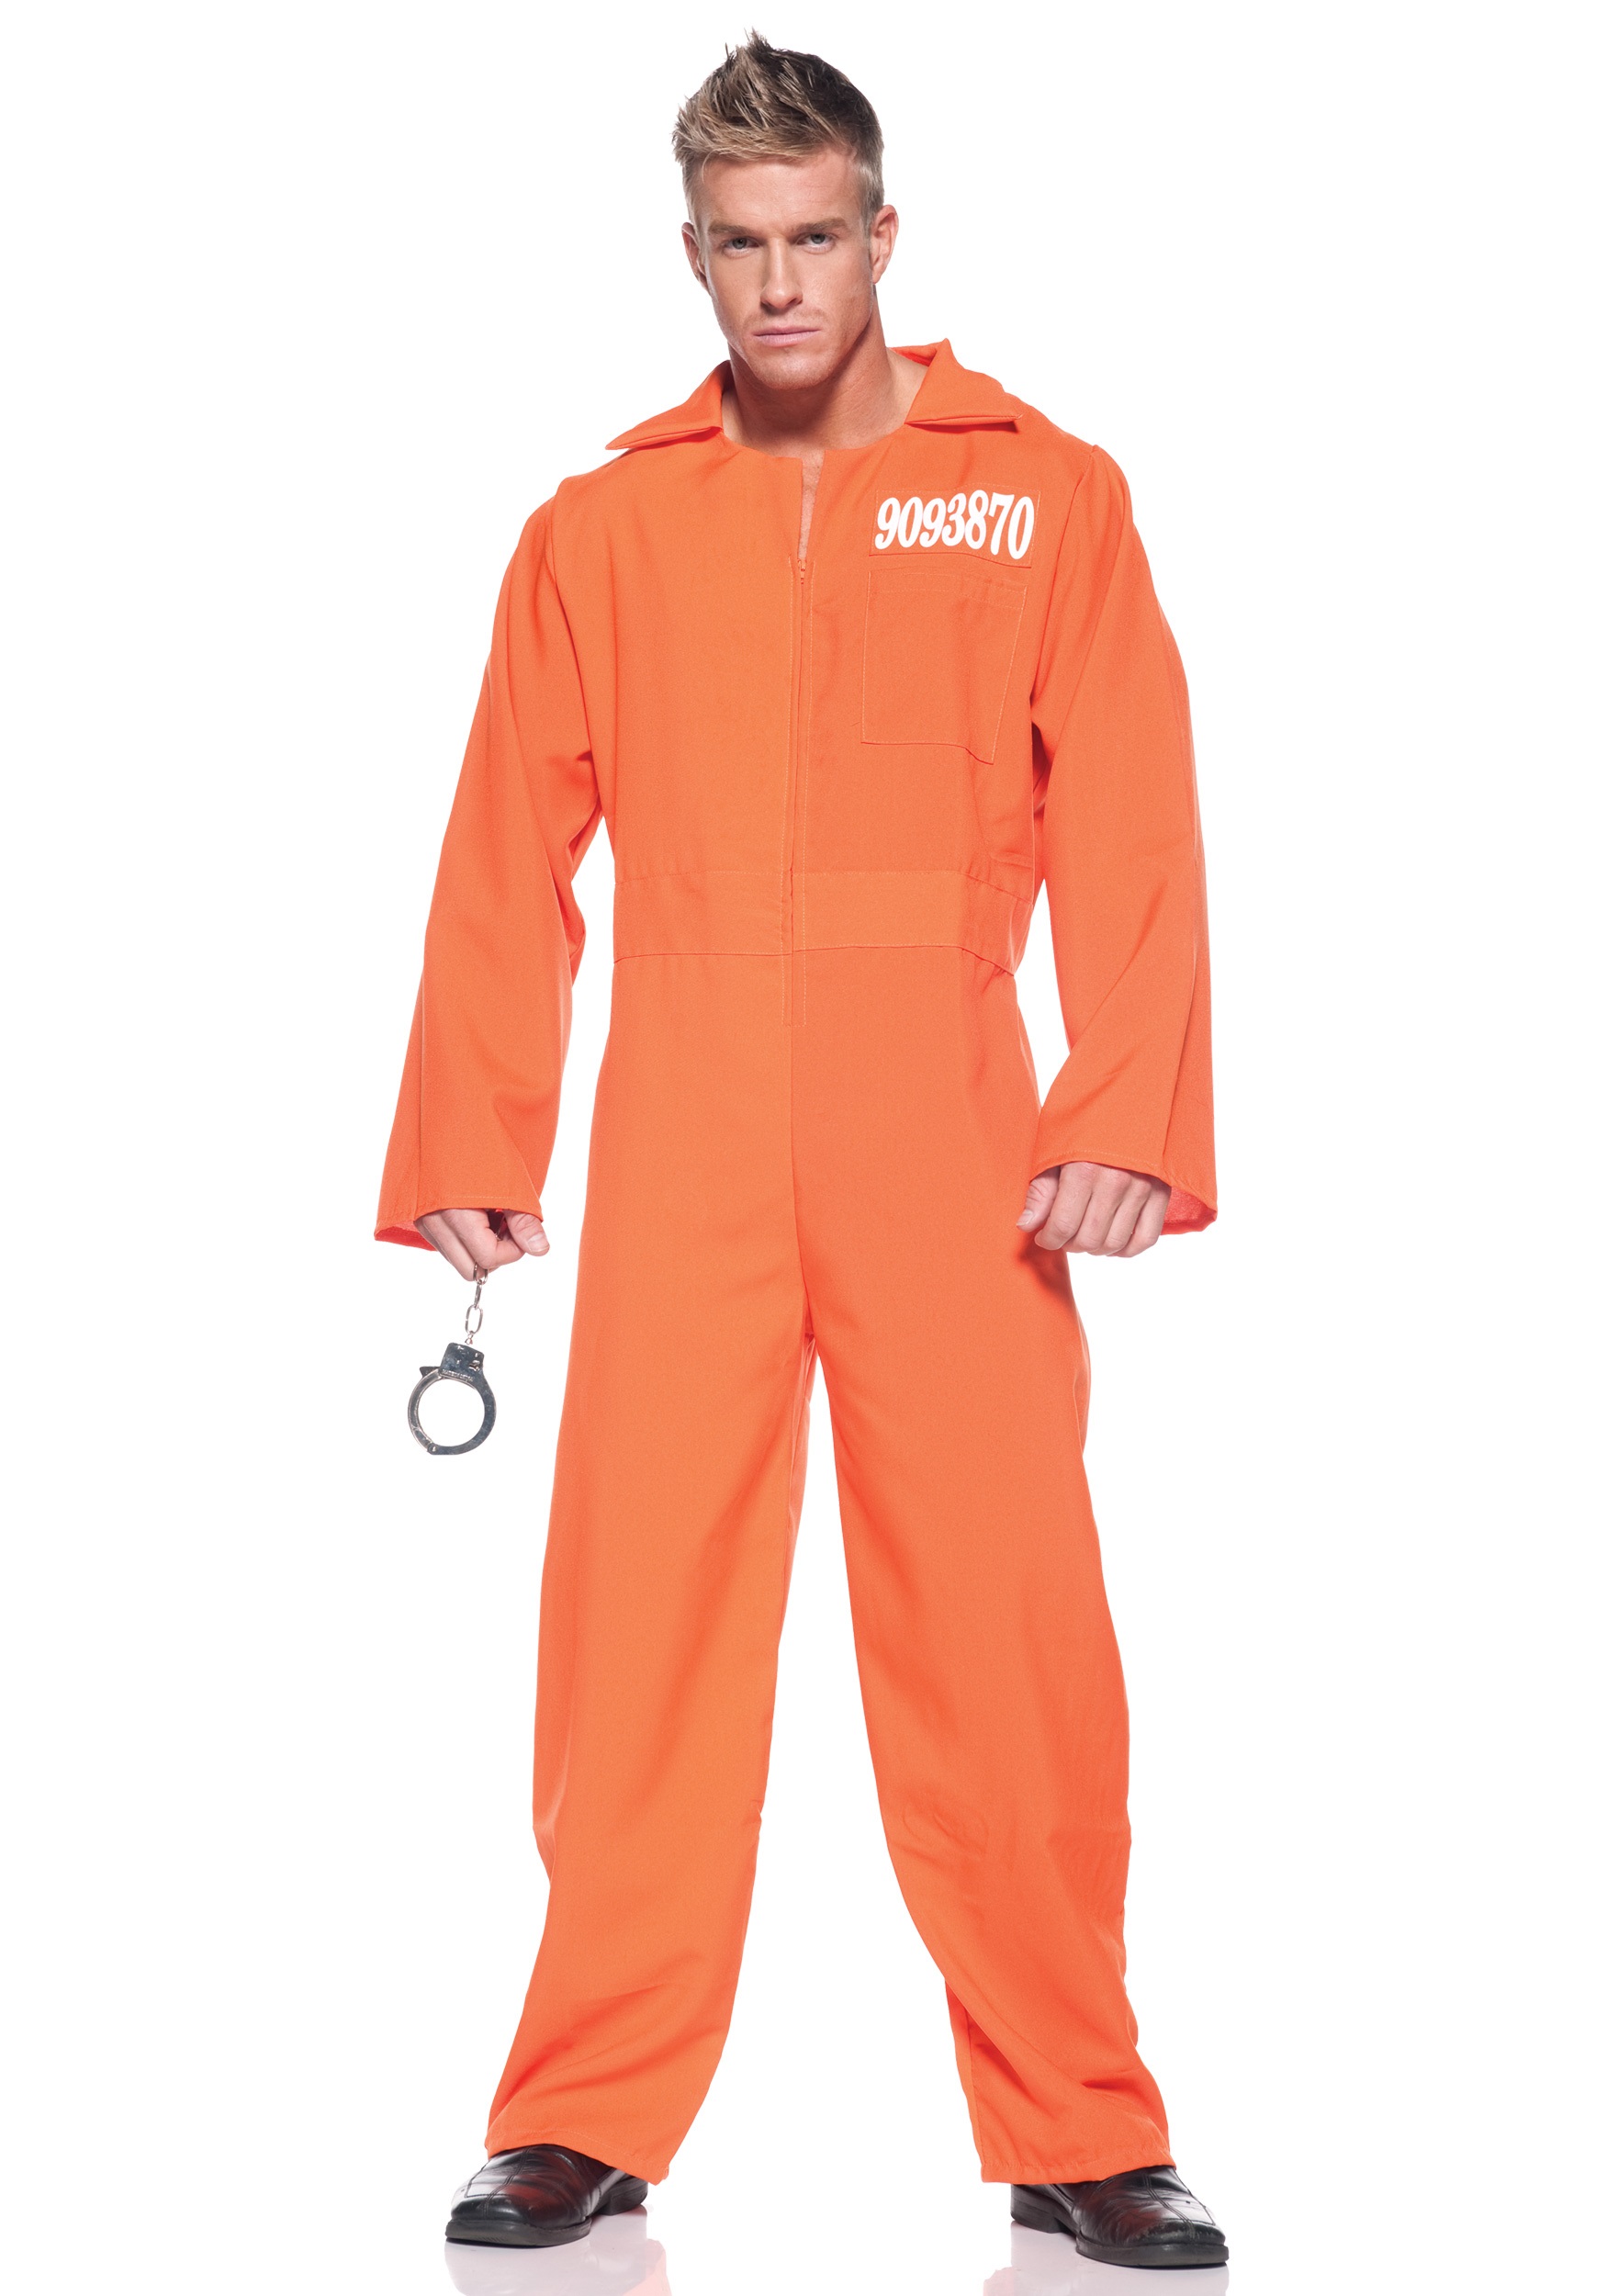 Mens Plus Size Prison Jumpsuit Costume